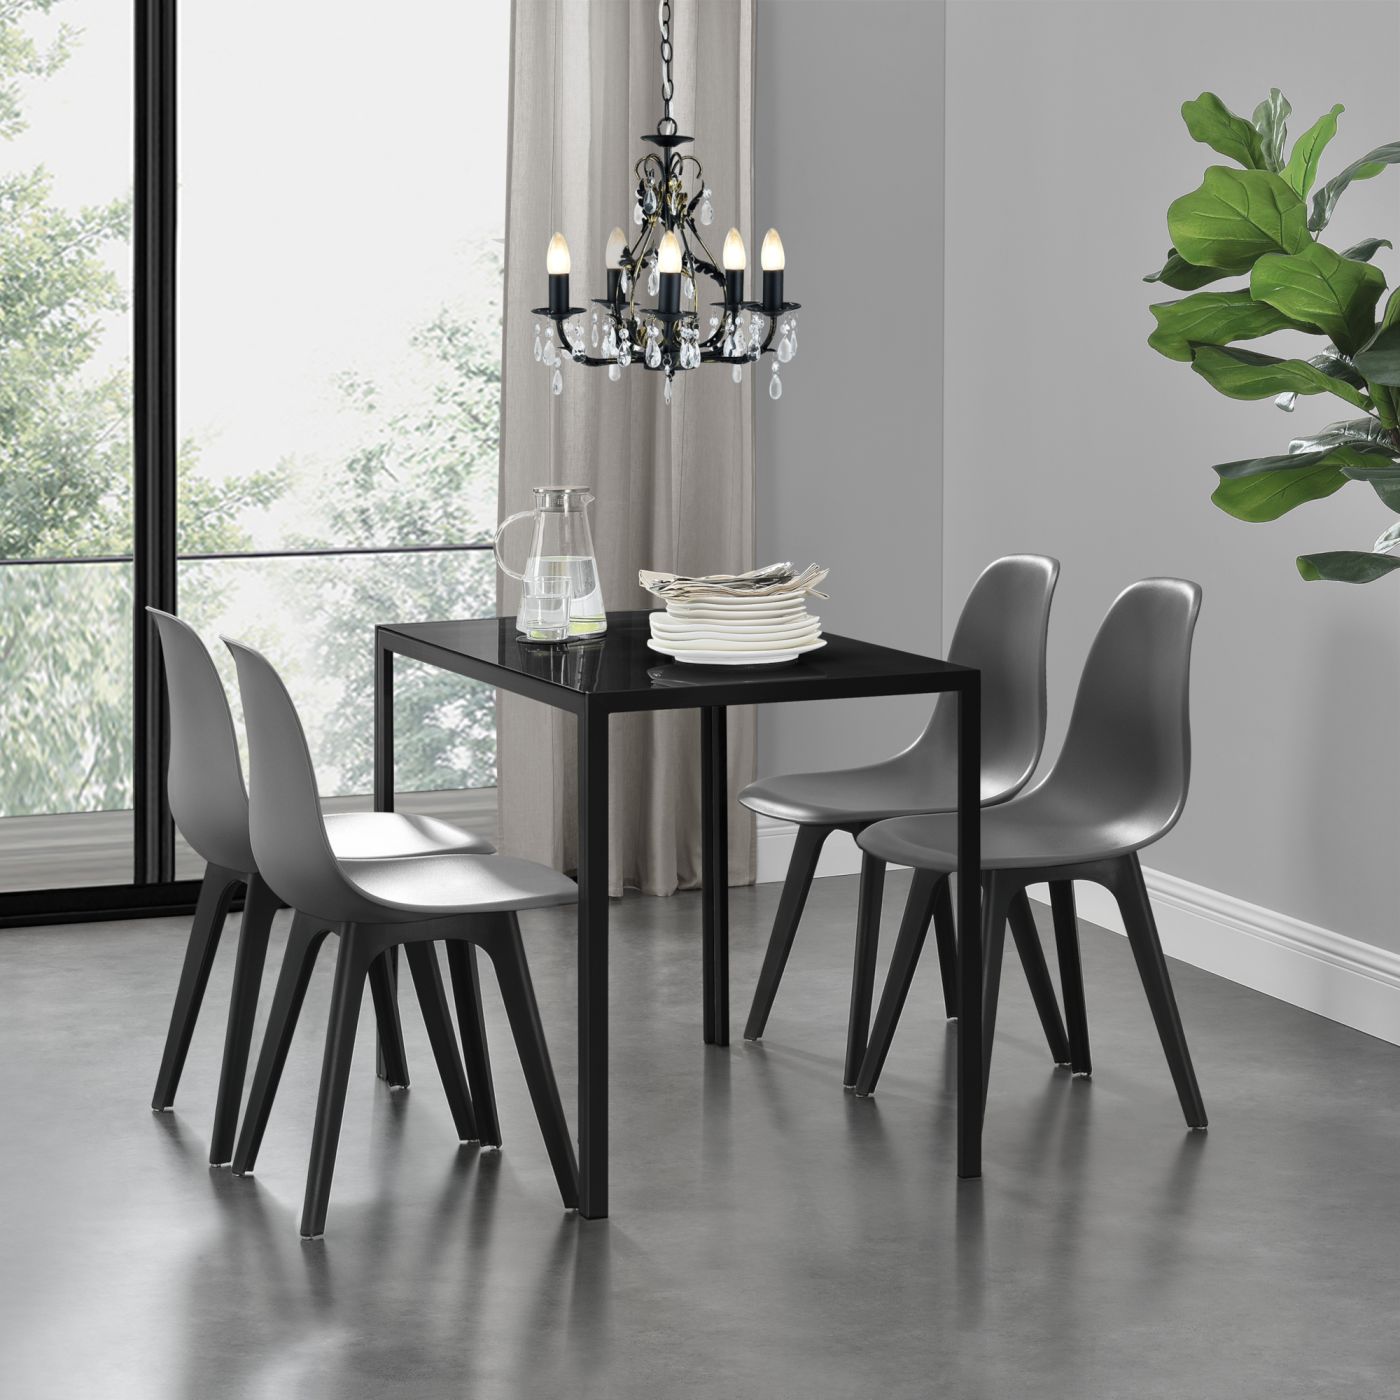 Eethoek Delft glazen eettafel met 4 stoelen zwart en grijs premiumXL